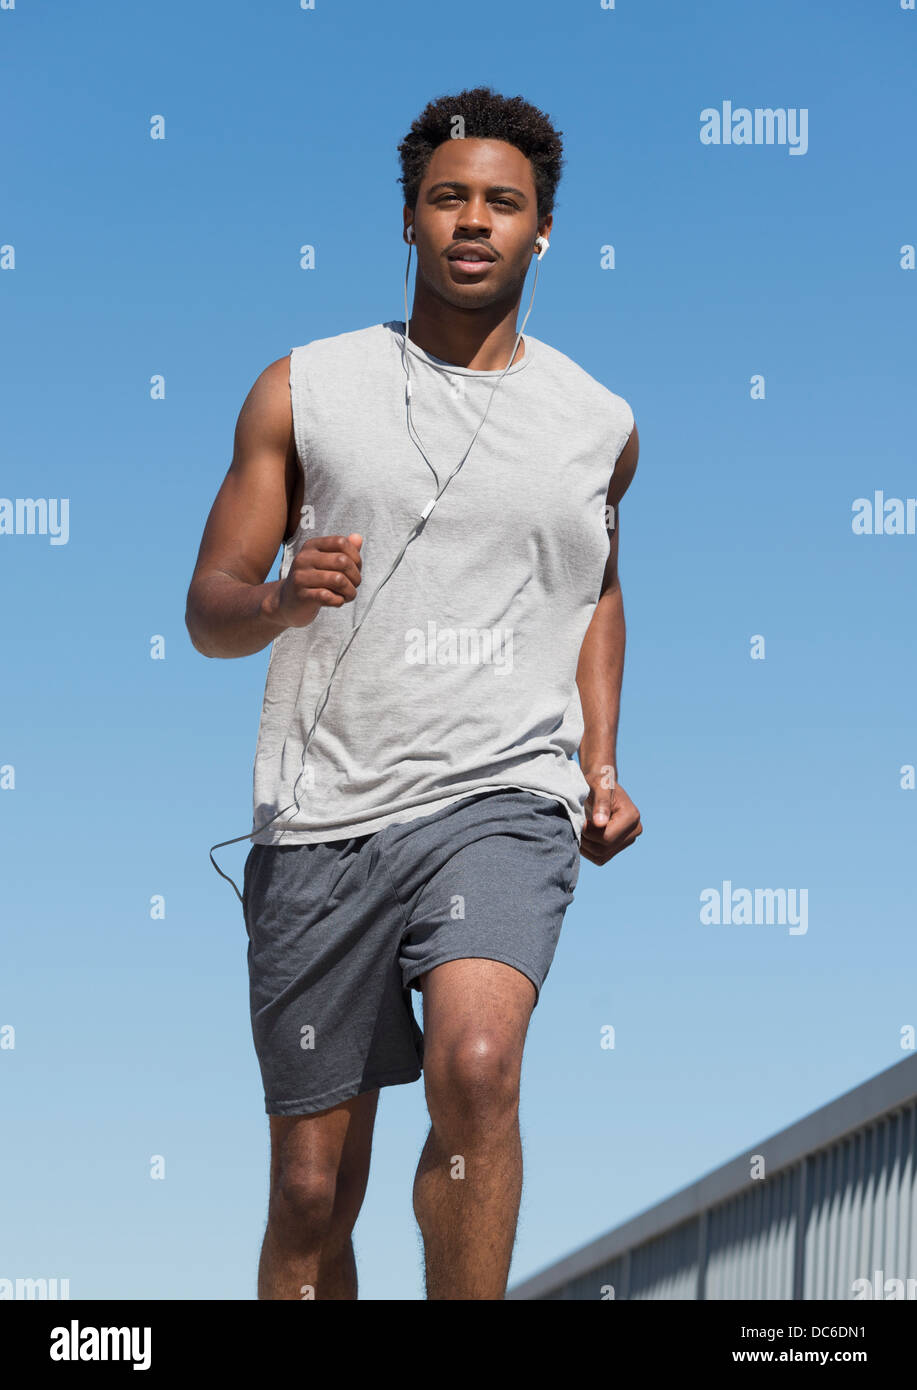 Homme jogging Banque D'Images